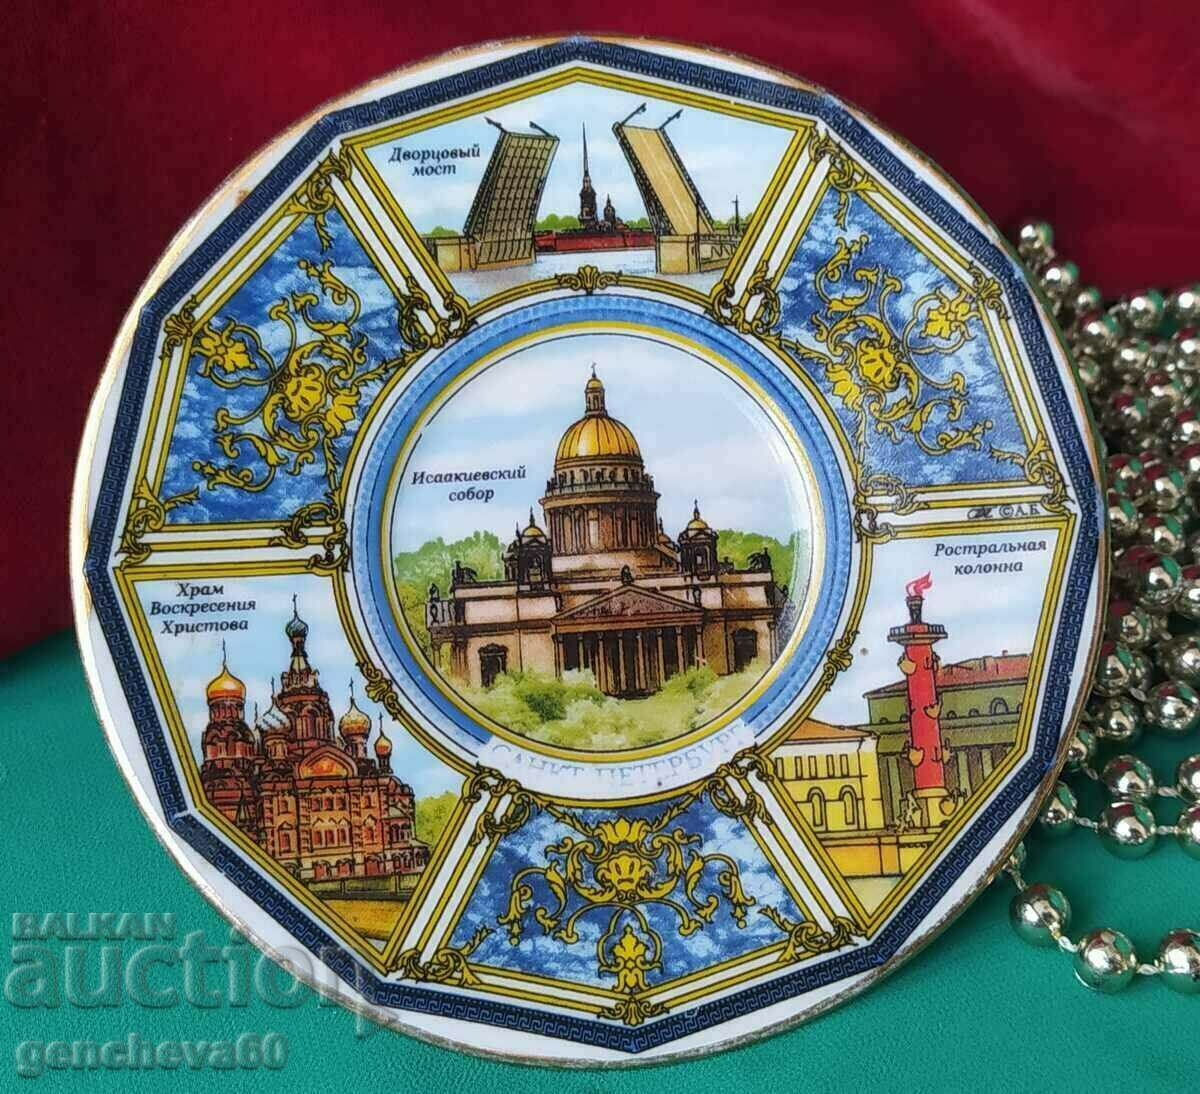 Αναμνηστικό ρωσικό πιατάκι πορσελάνης για συλλογή